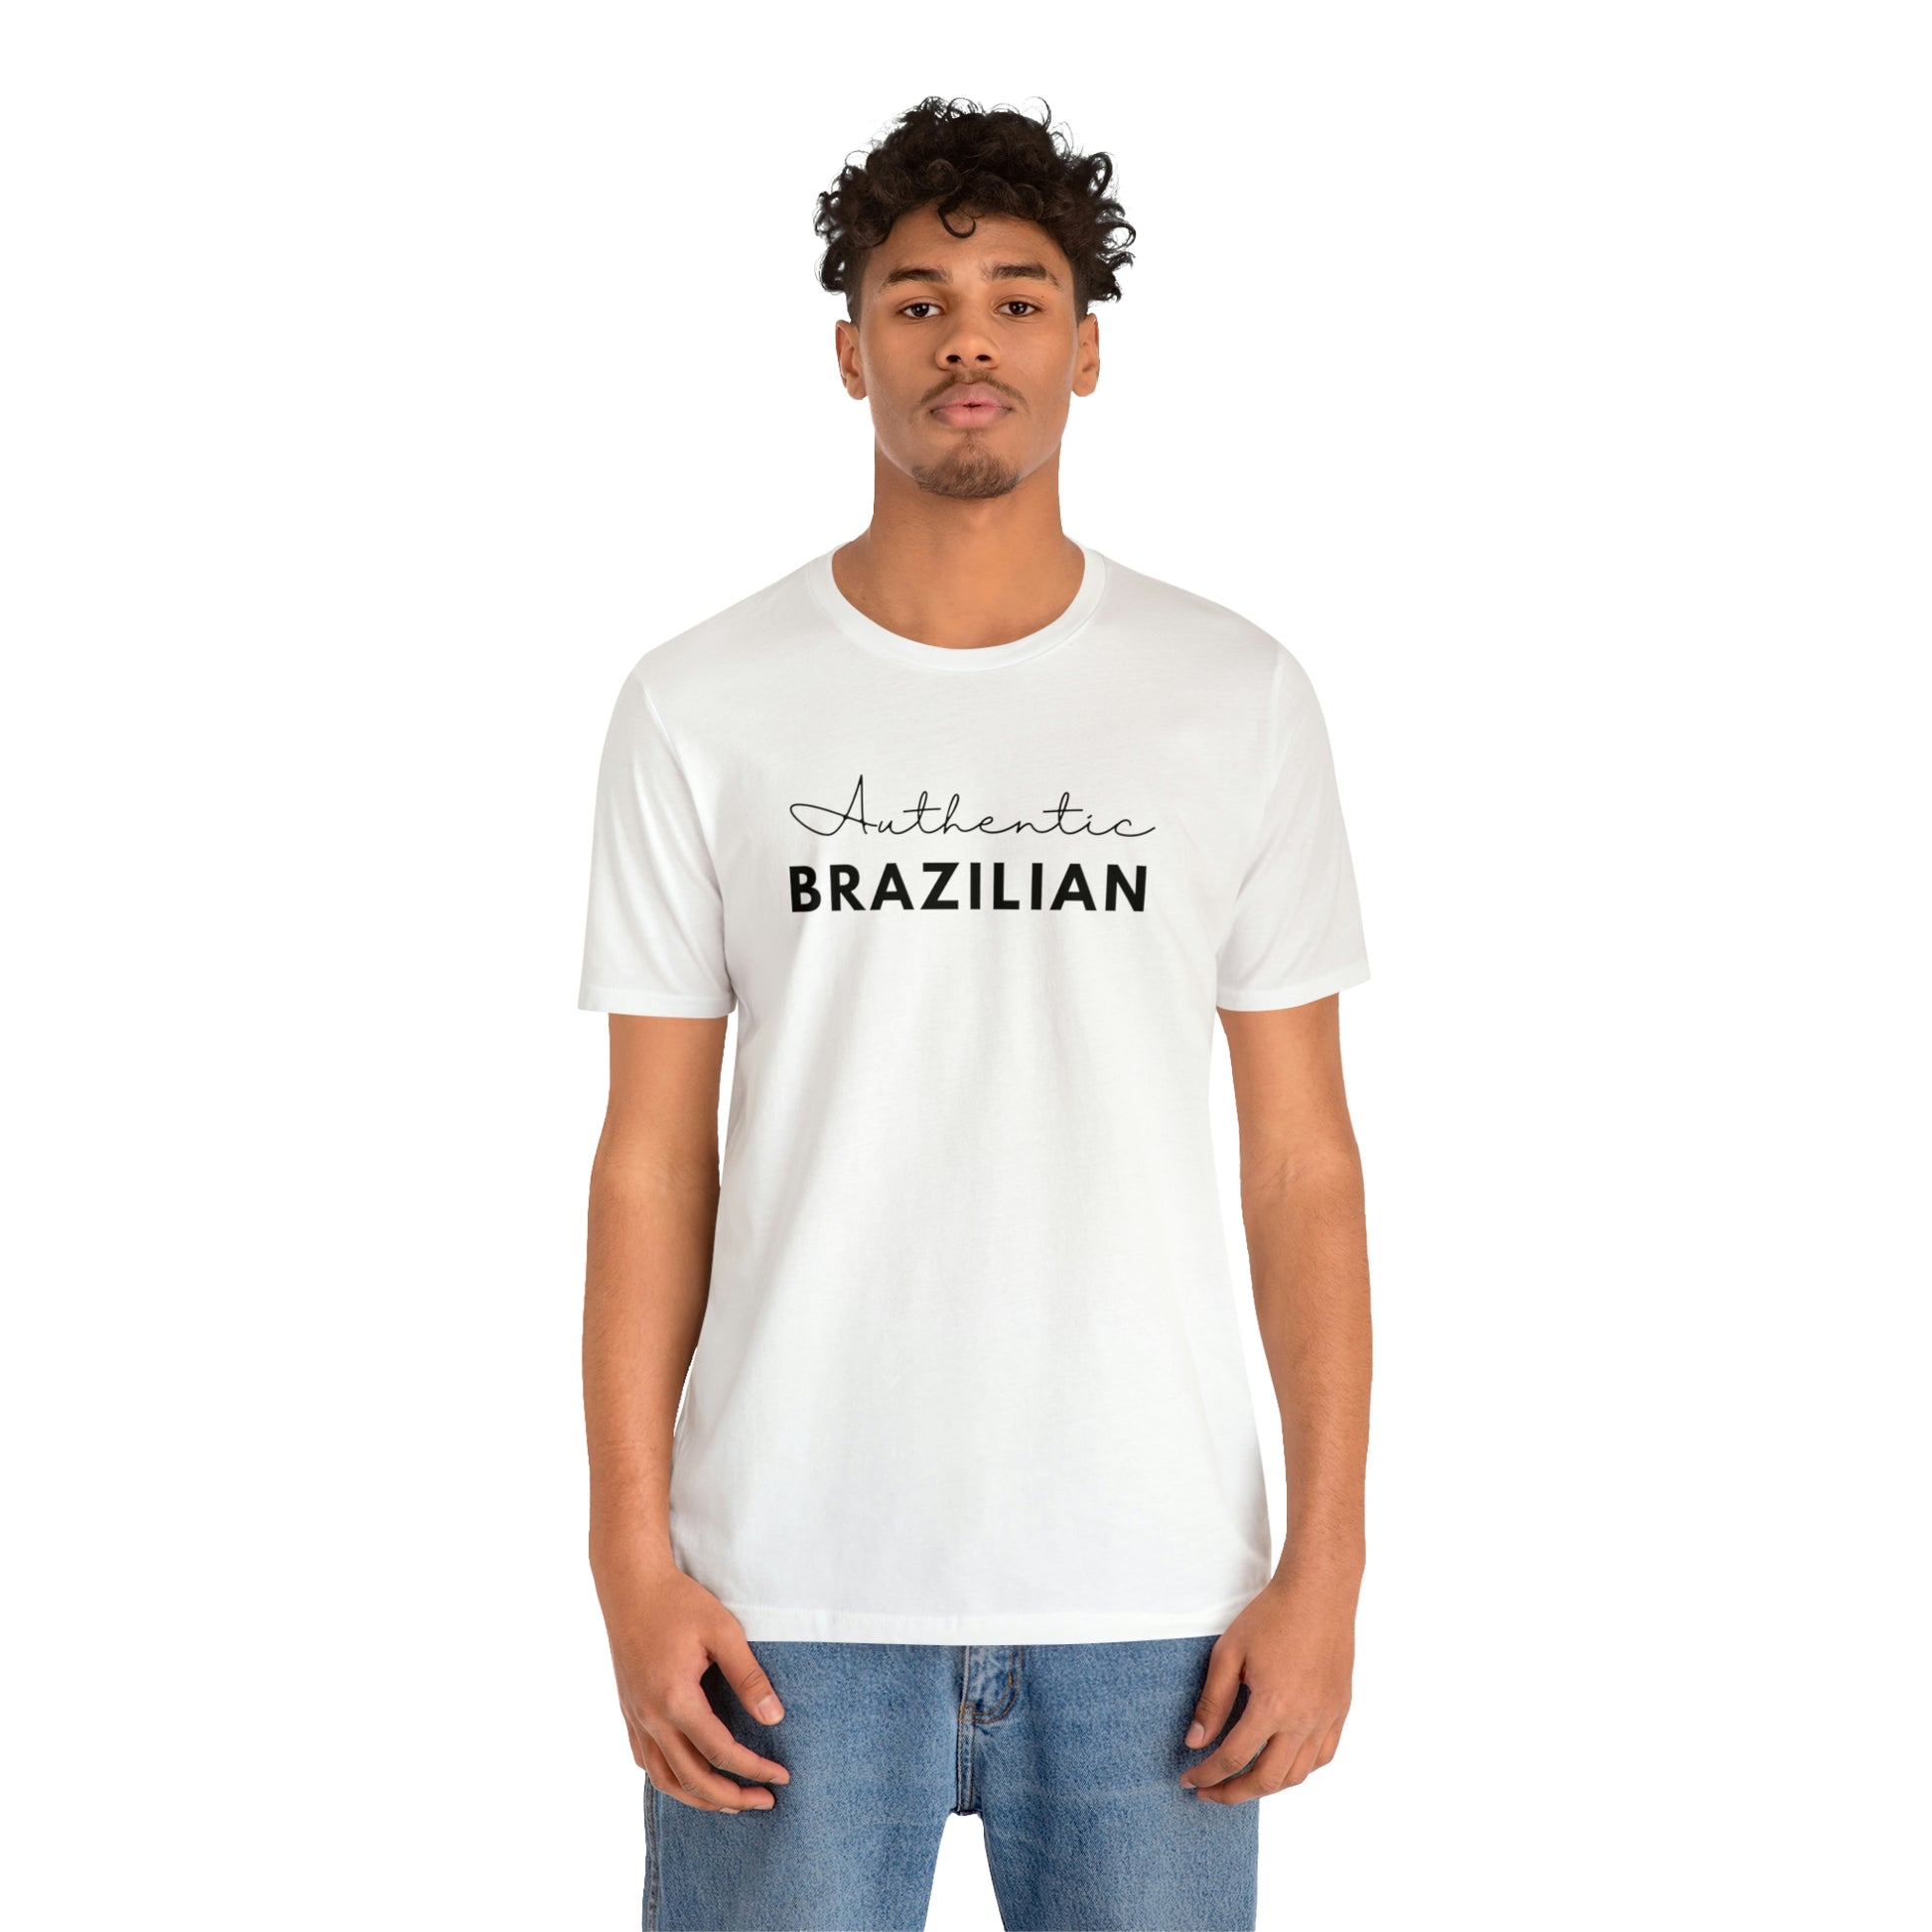 Authentic Brazilian Unisex T-shirt